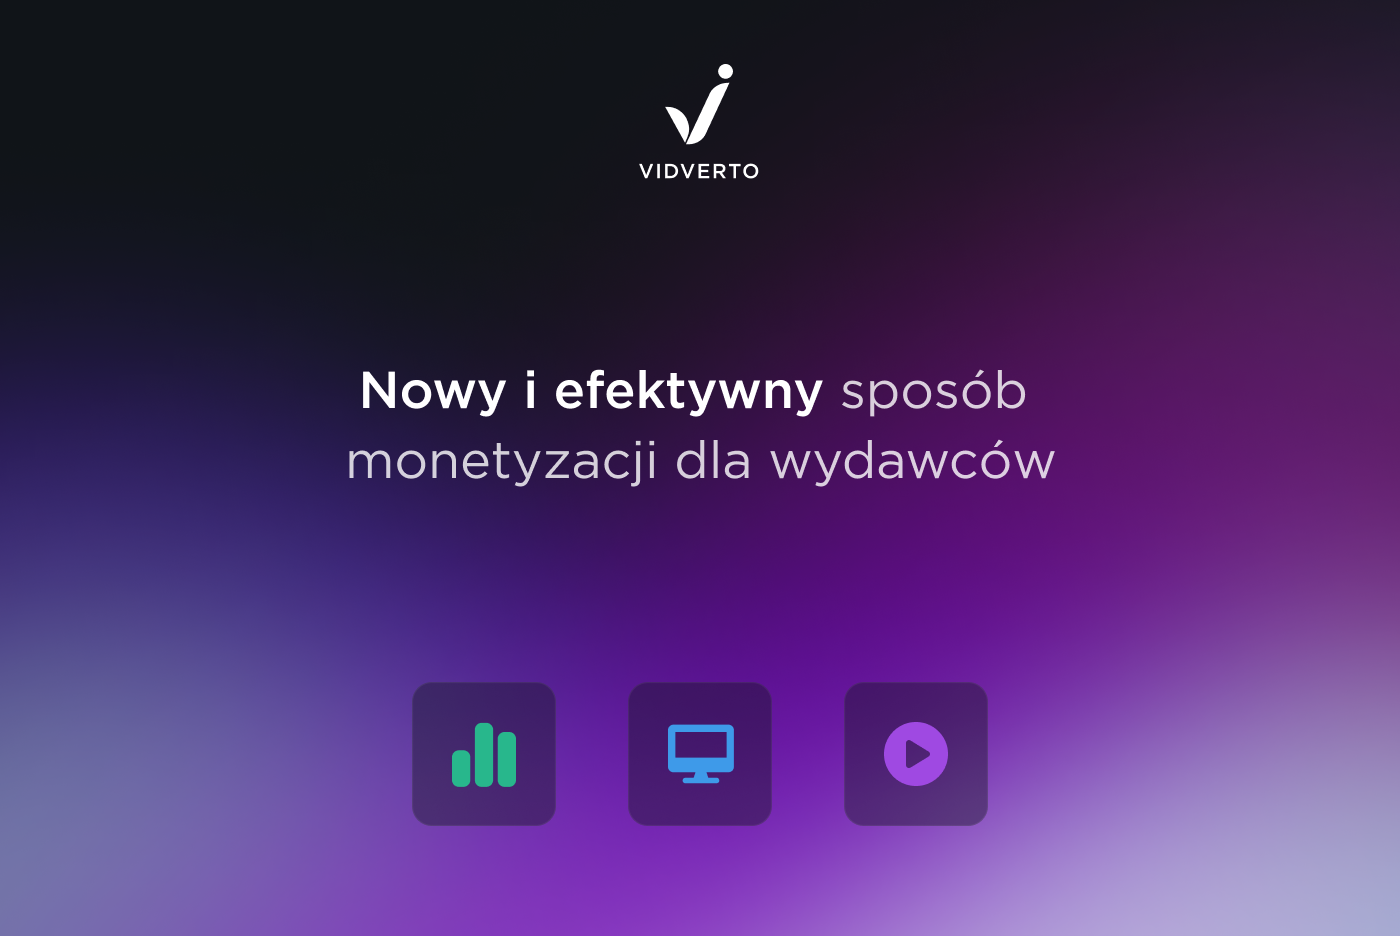 Vidverto — новий та ефективний спосіб монетизації для медіа.